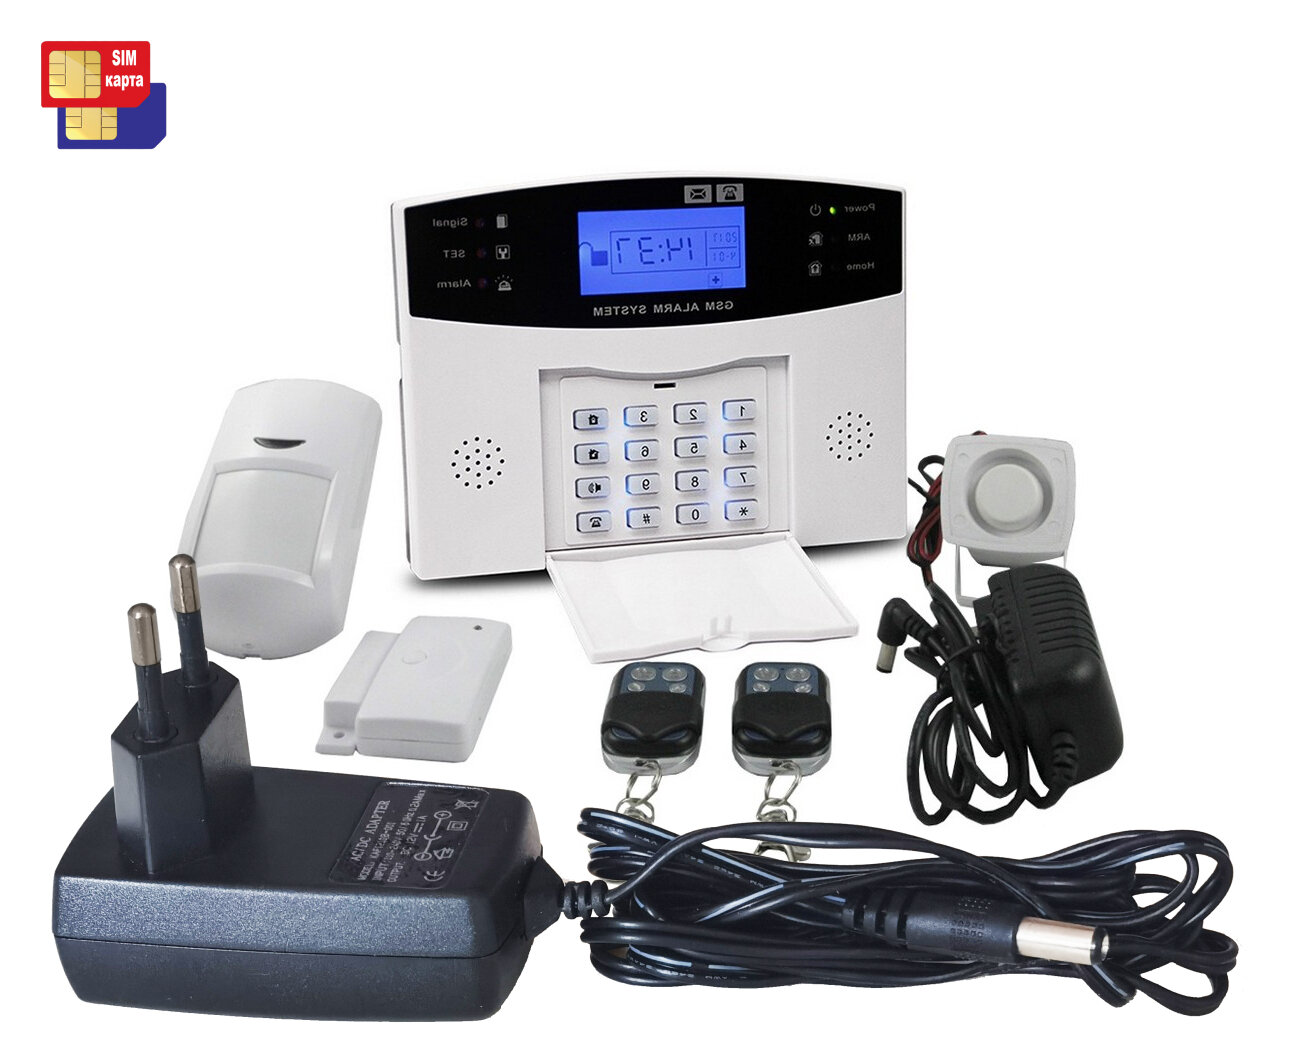 Автоматическая автономная охранная GSM/WiFi сигнализация - Страж-GSM/WiFi-Сигнал (S18731PG5) (для помещения / для защиты, двери / оповещения)